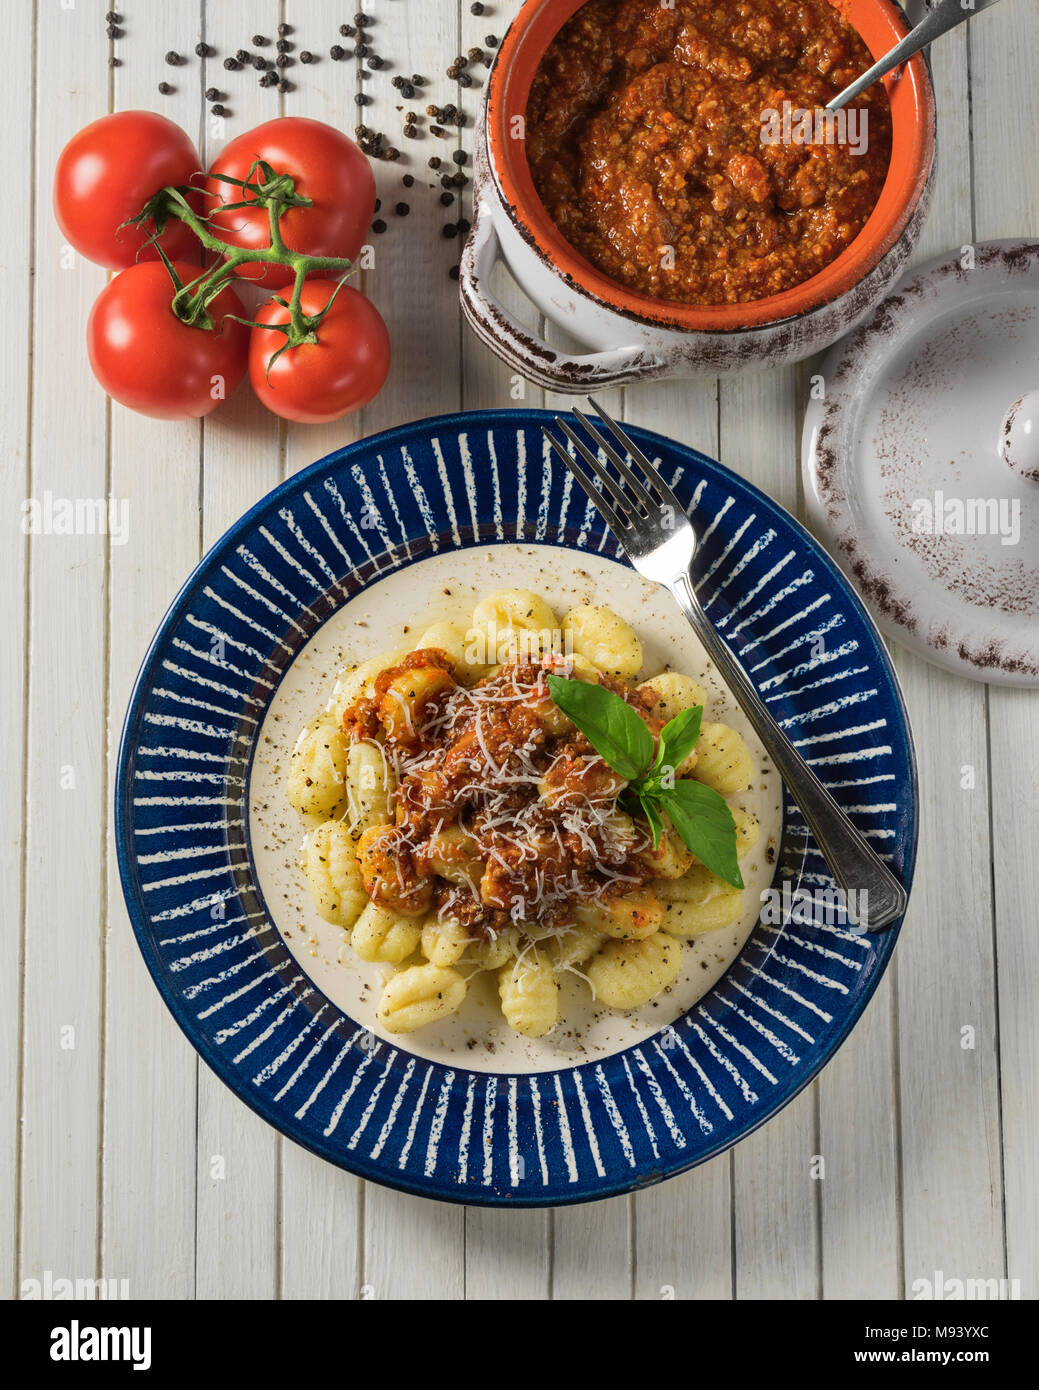 Gnocchi ragù. L'Italien boulettes de pommes de terre avec la sauce bolognaise. L'alimentation de l'Italie Banque D'Images